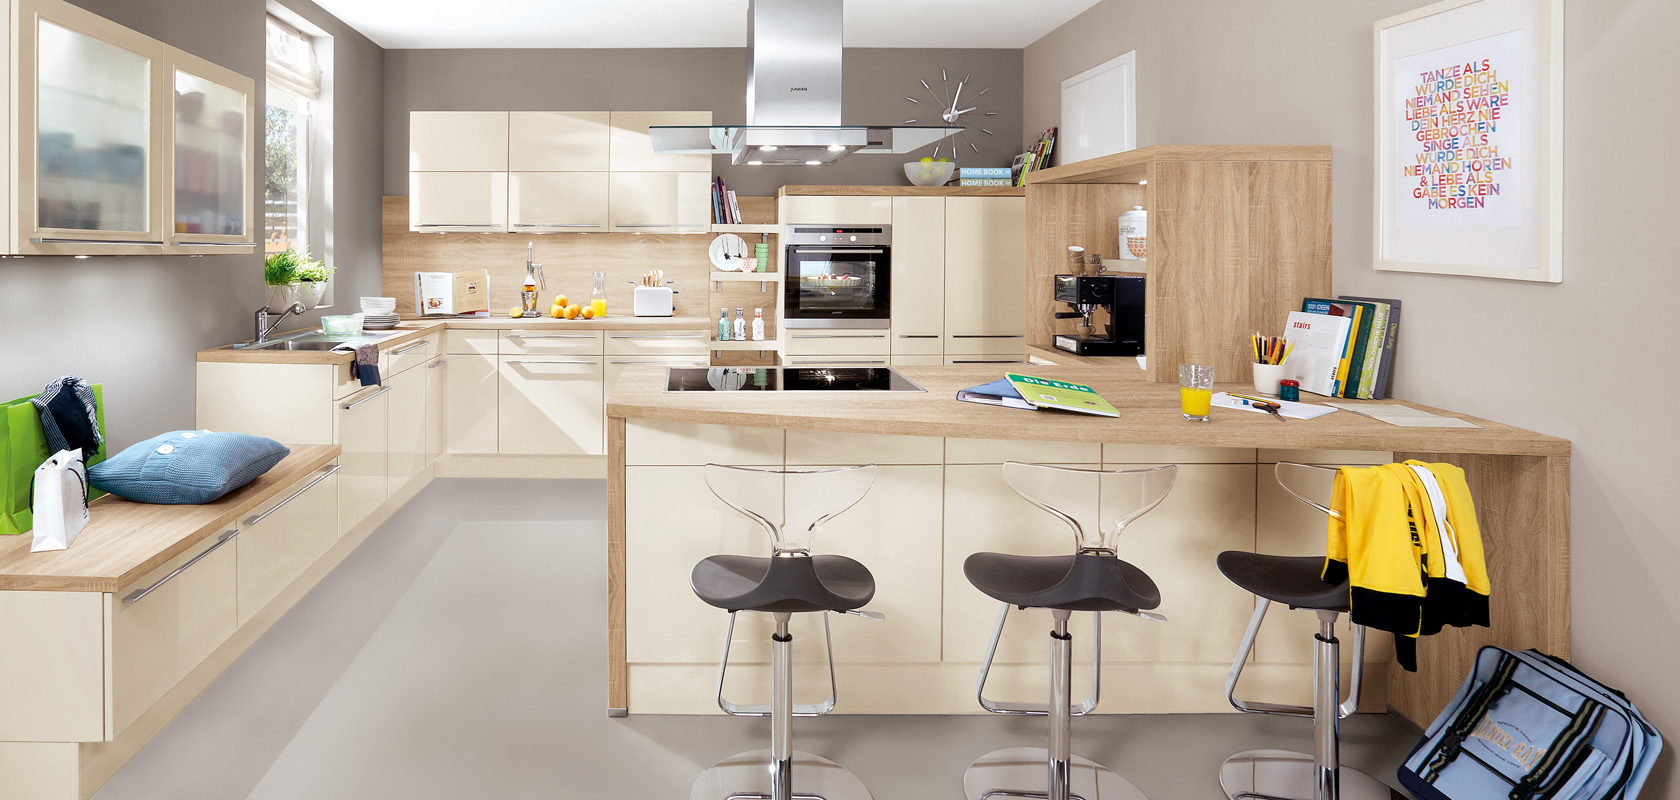 Moderne Kücheninnenräume präsentieren ein schlankes Design mit Holzschränken, einer zentralen Insel, Edelstahlgeräten und einem gemütlichen Sitzbereich mit stilvollen Hockern.